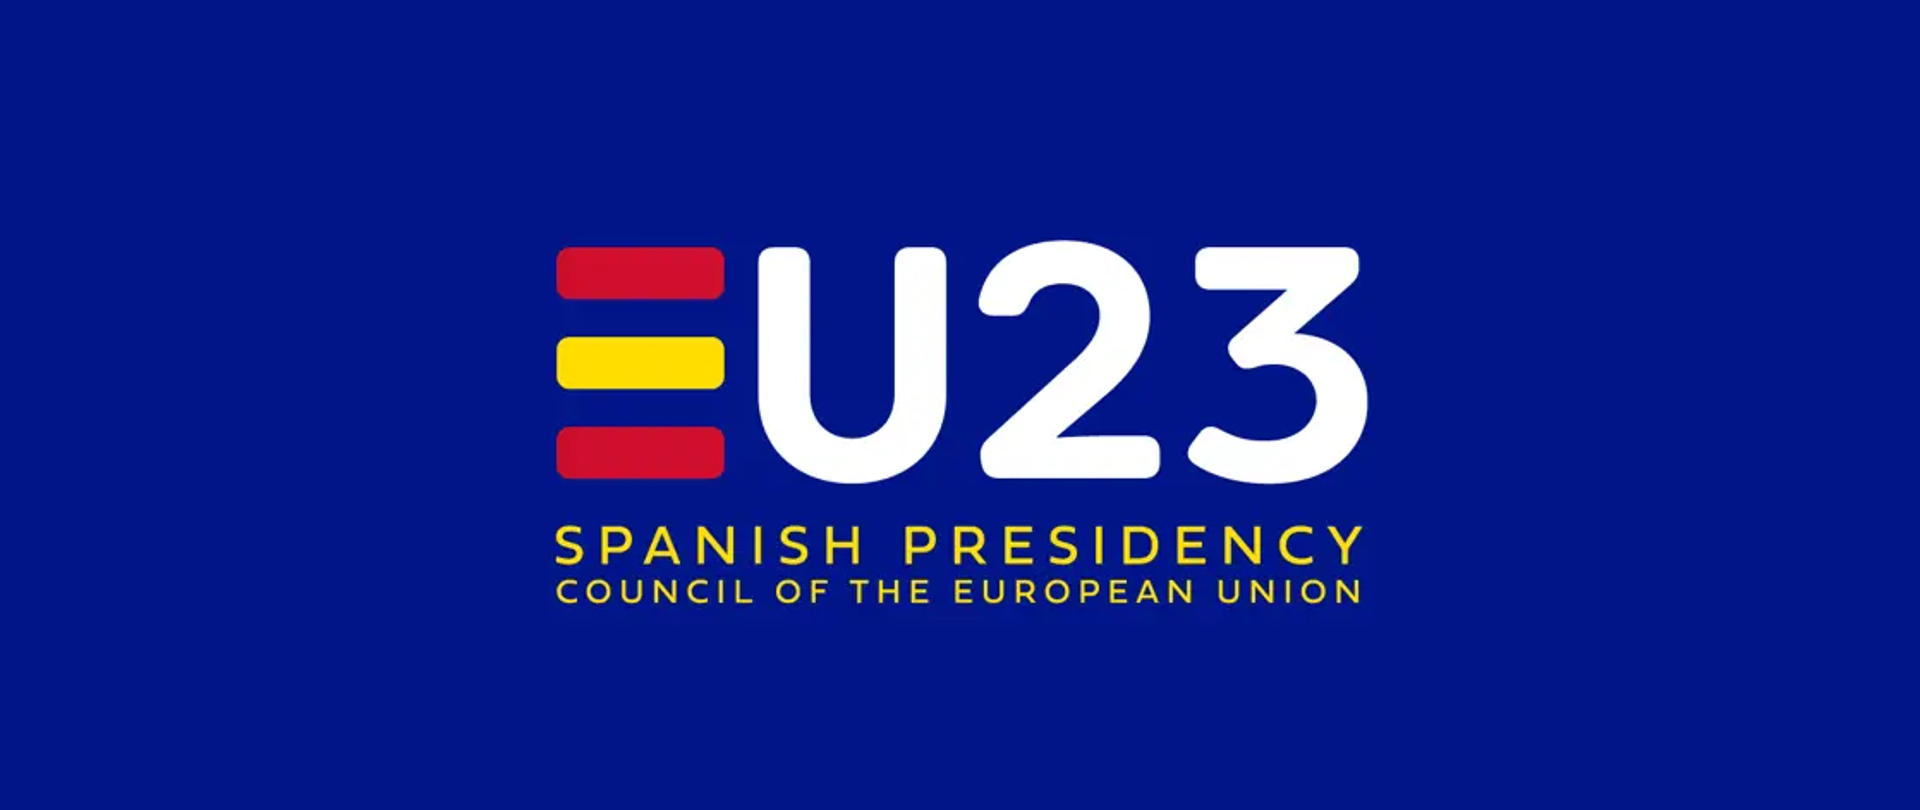 Na granatowym tle napis "EU23 spanish presidency council of the Euopean Union", gdzie pierwsze E jest dwukolorowe: czerwono-żółte